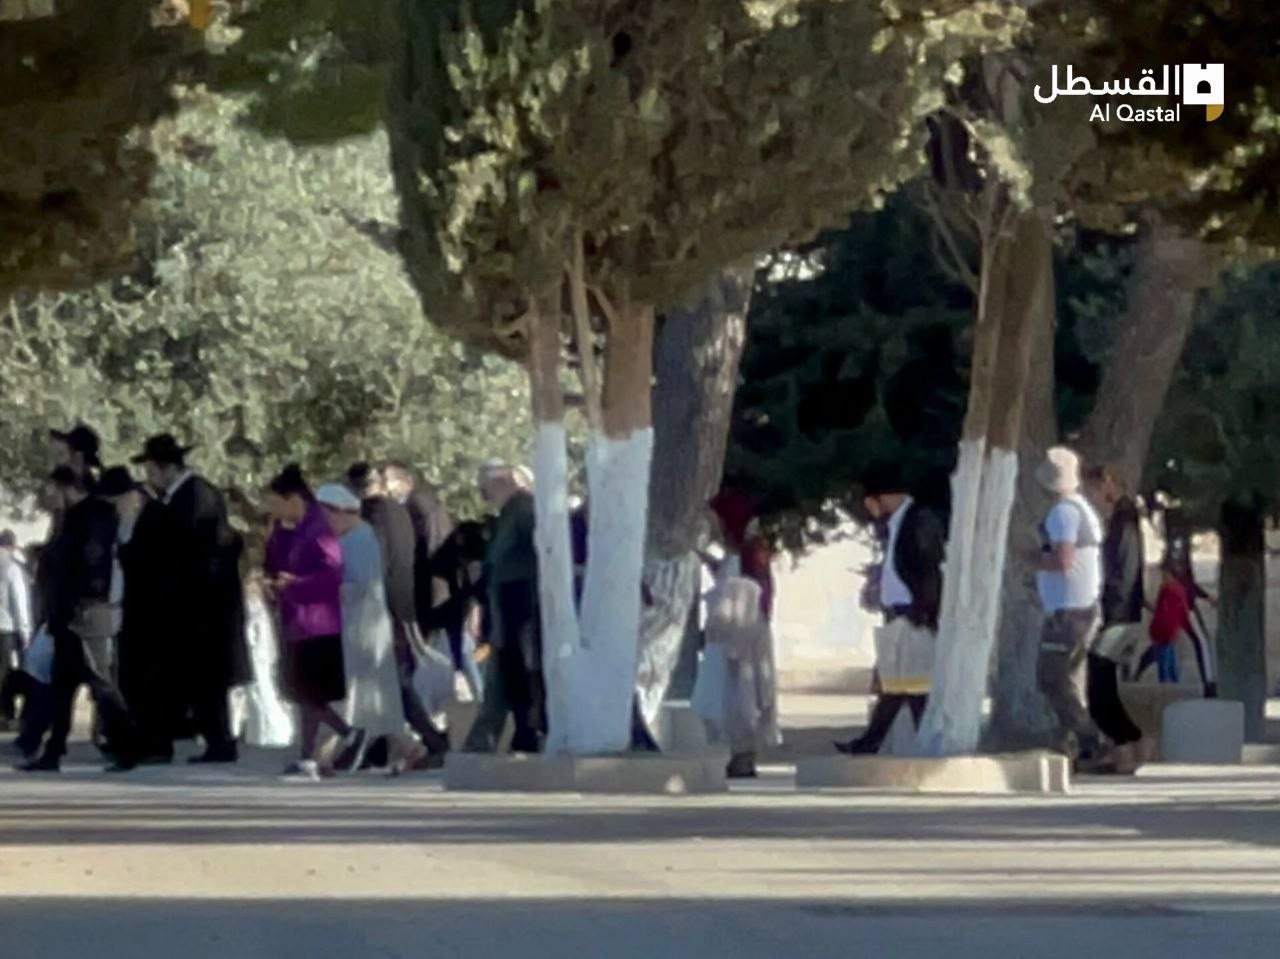  مستوطنون يقتحمون المسجد الأقصى المبارك بحراسة من قوات الاحتلال (1).jpeg